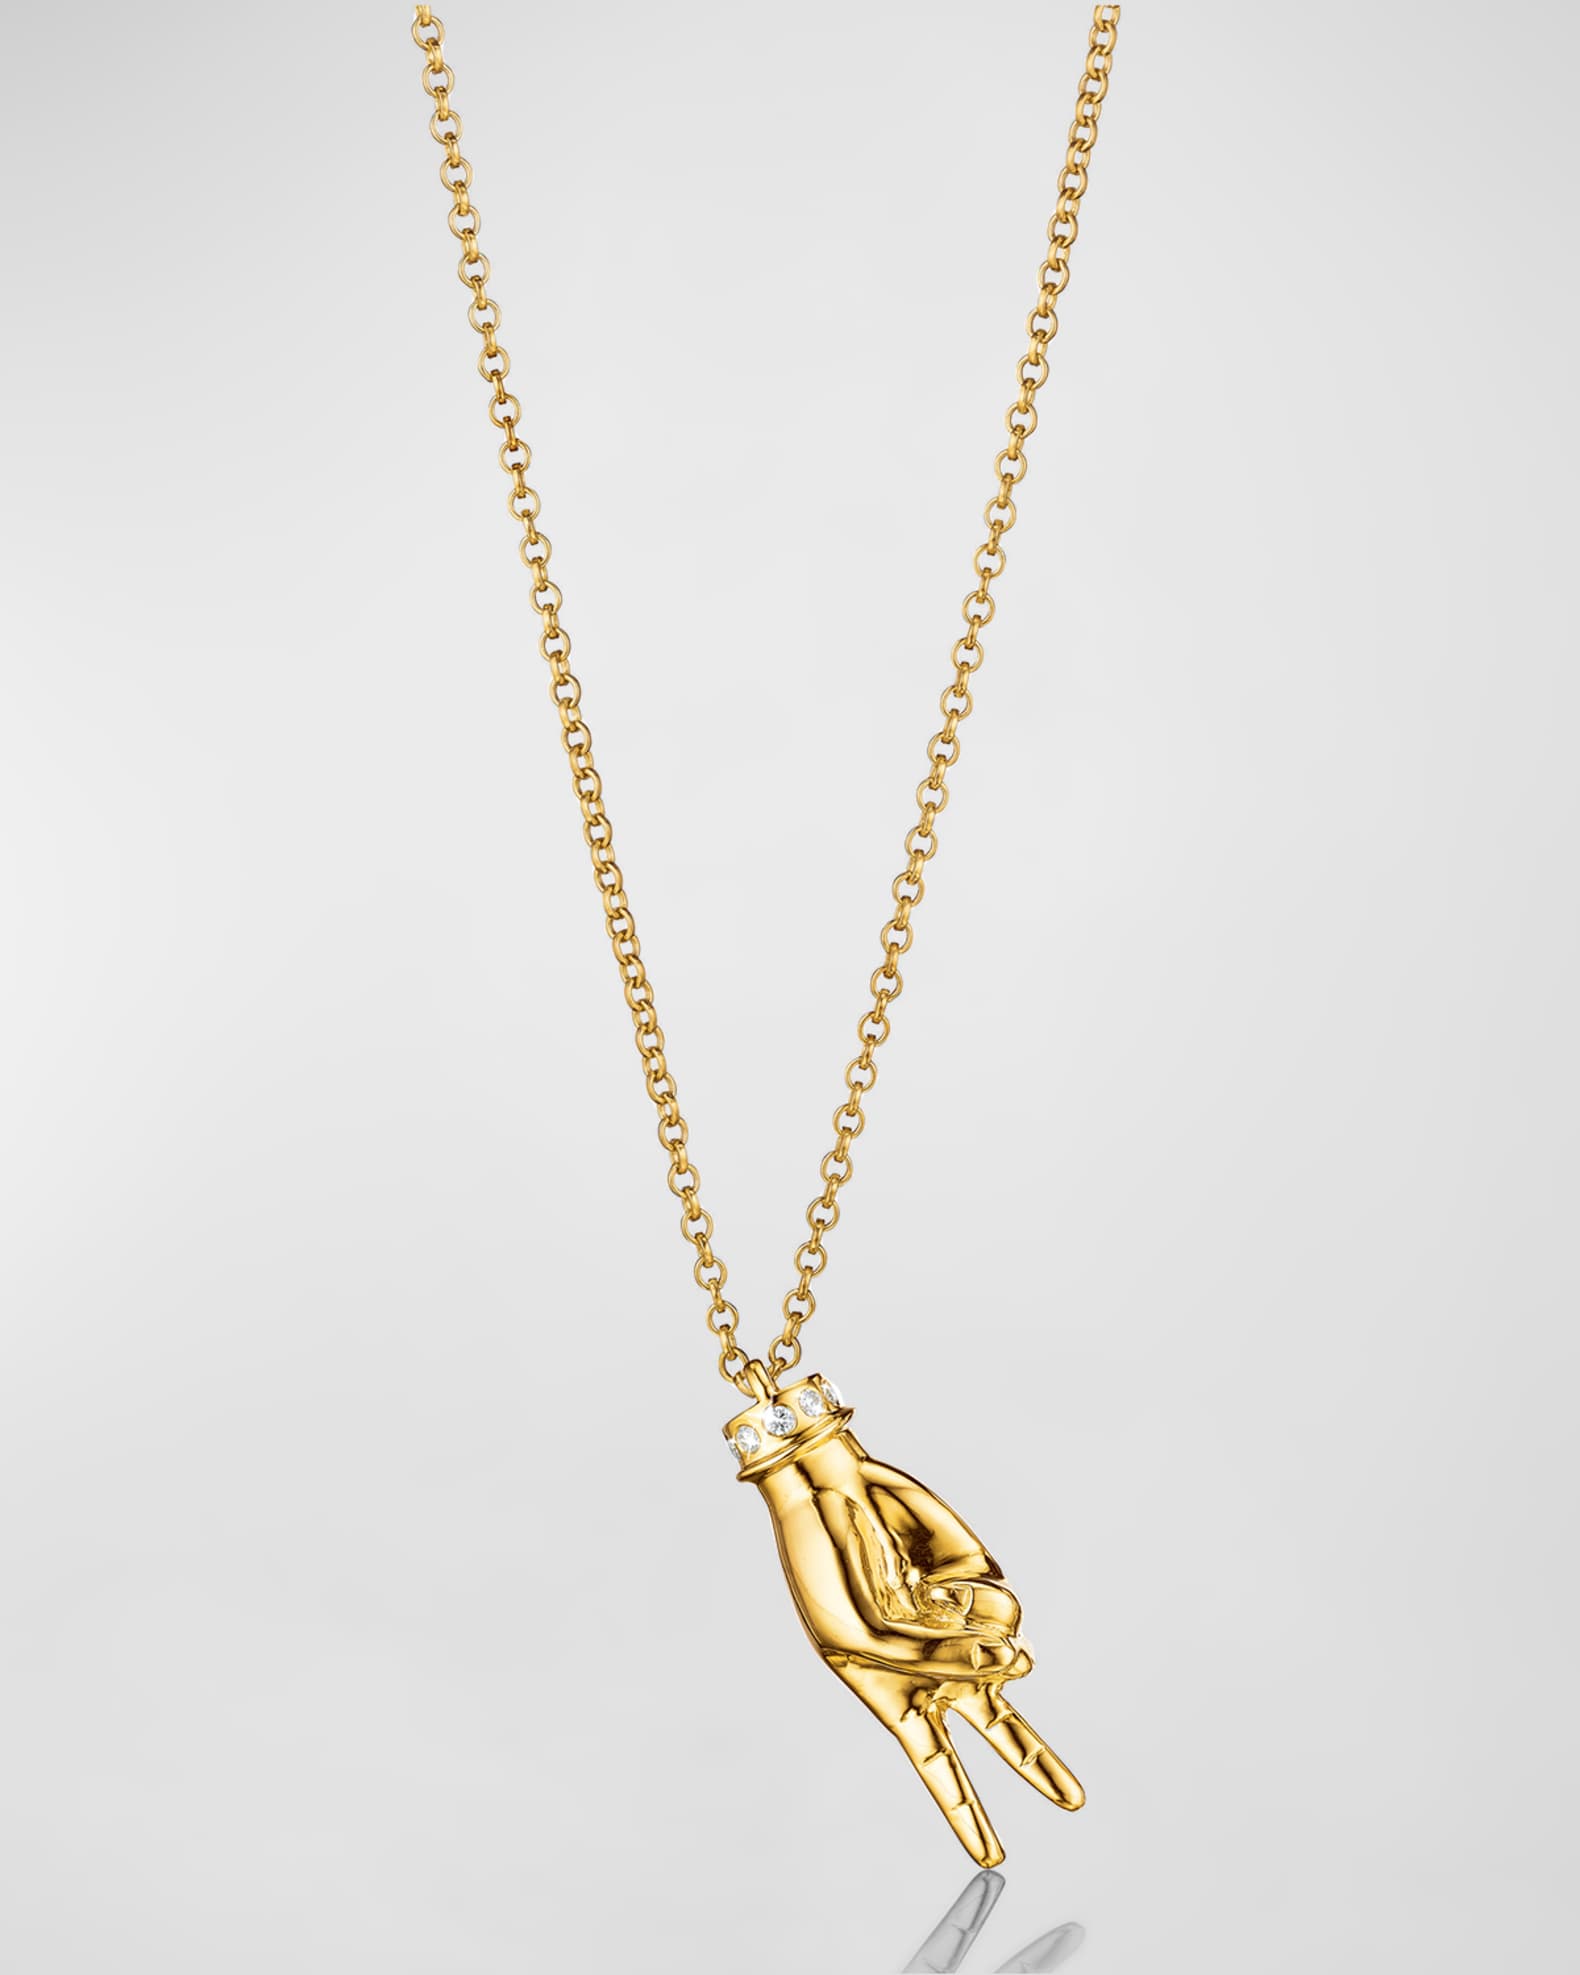 Louis Vuitton 18K Gold Envelope Charm Letter Charm Pendant